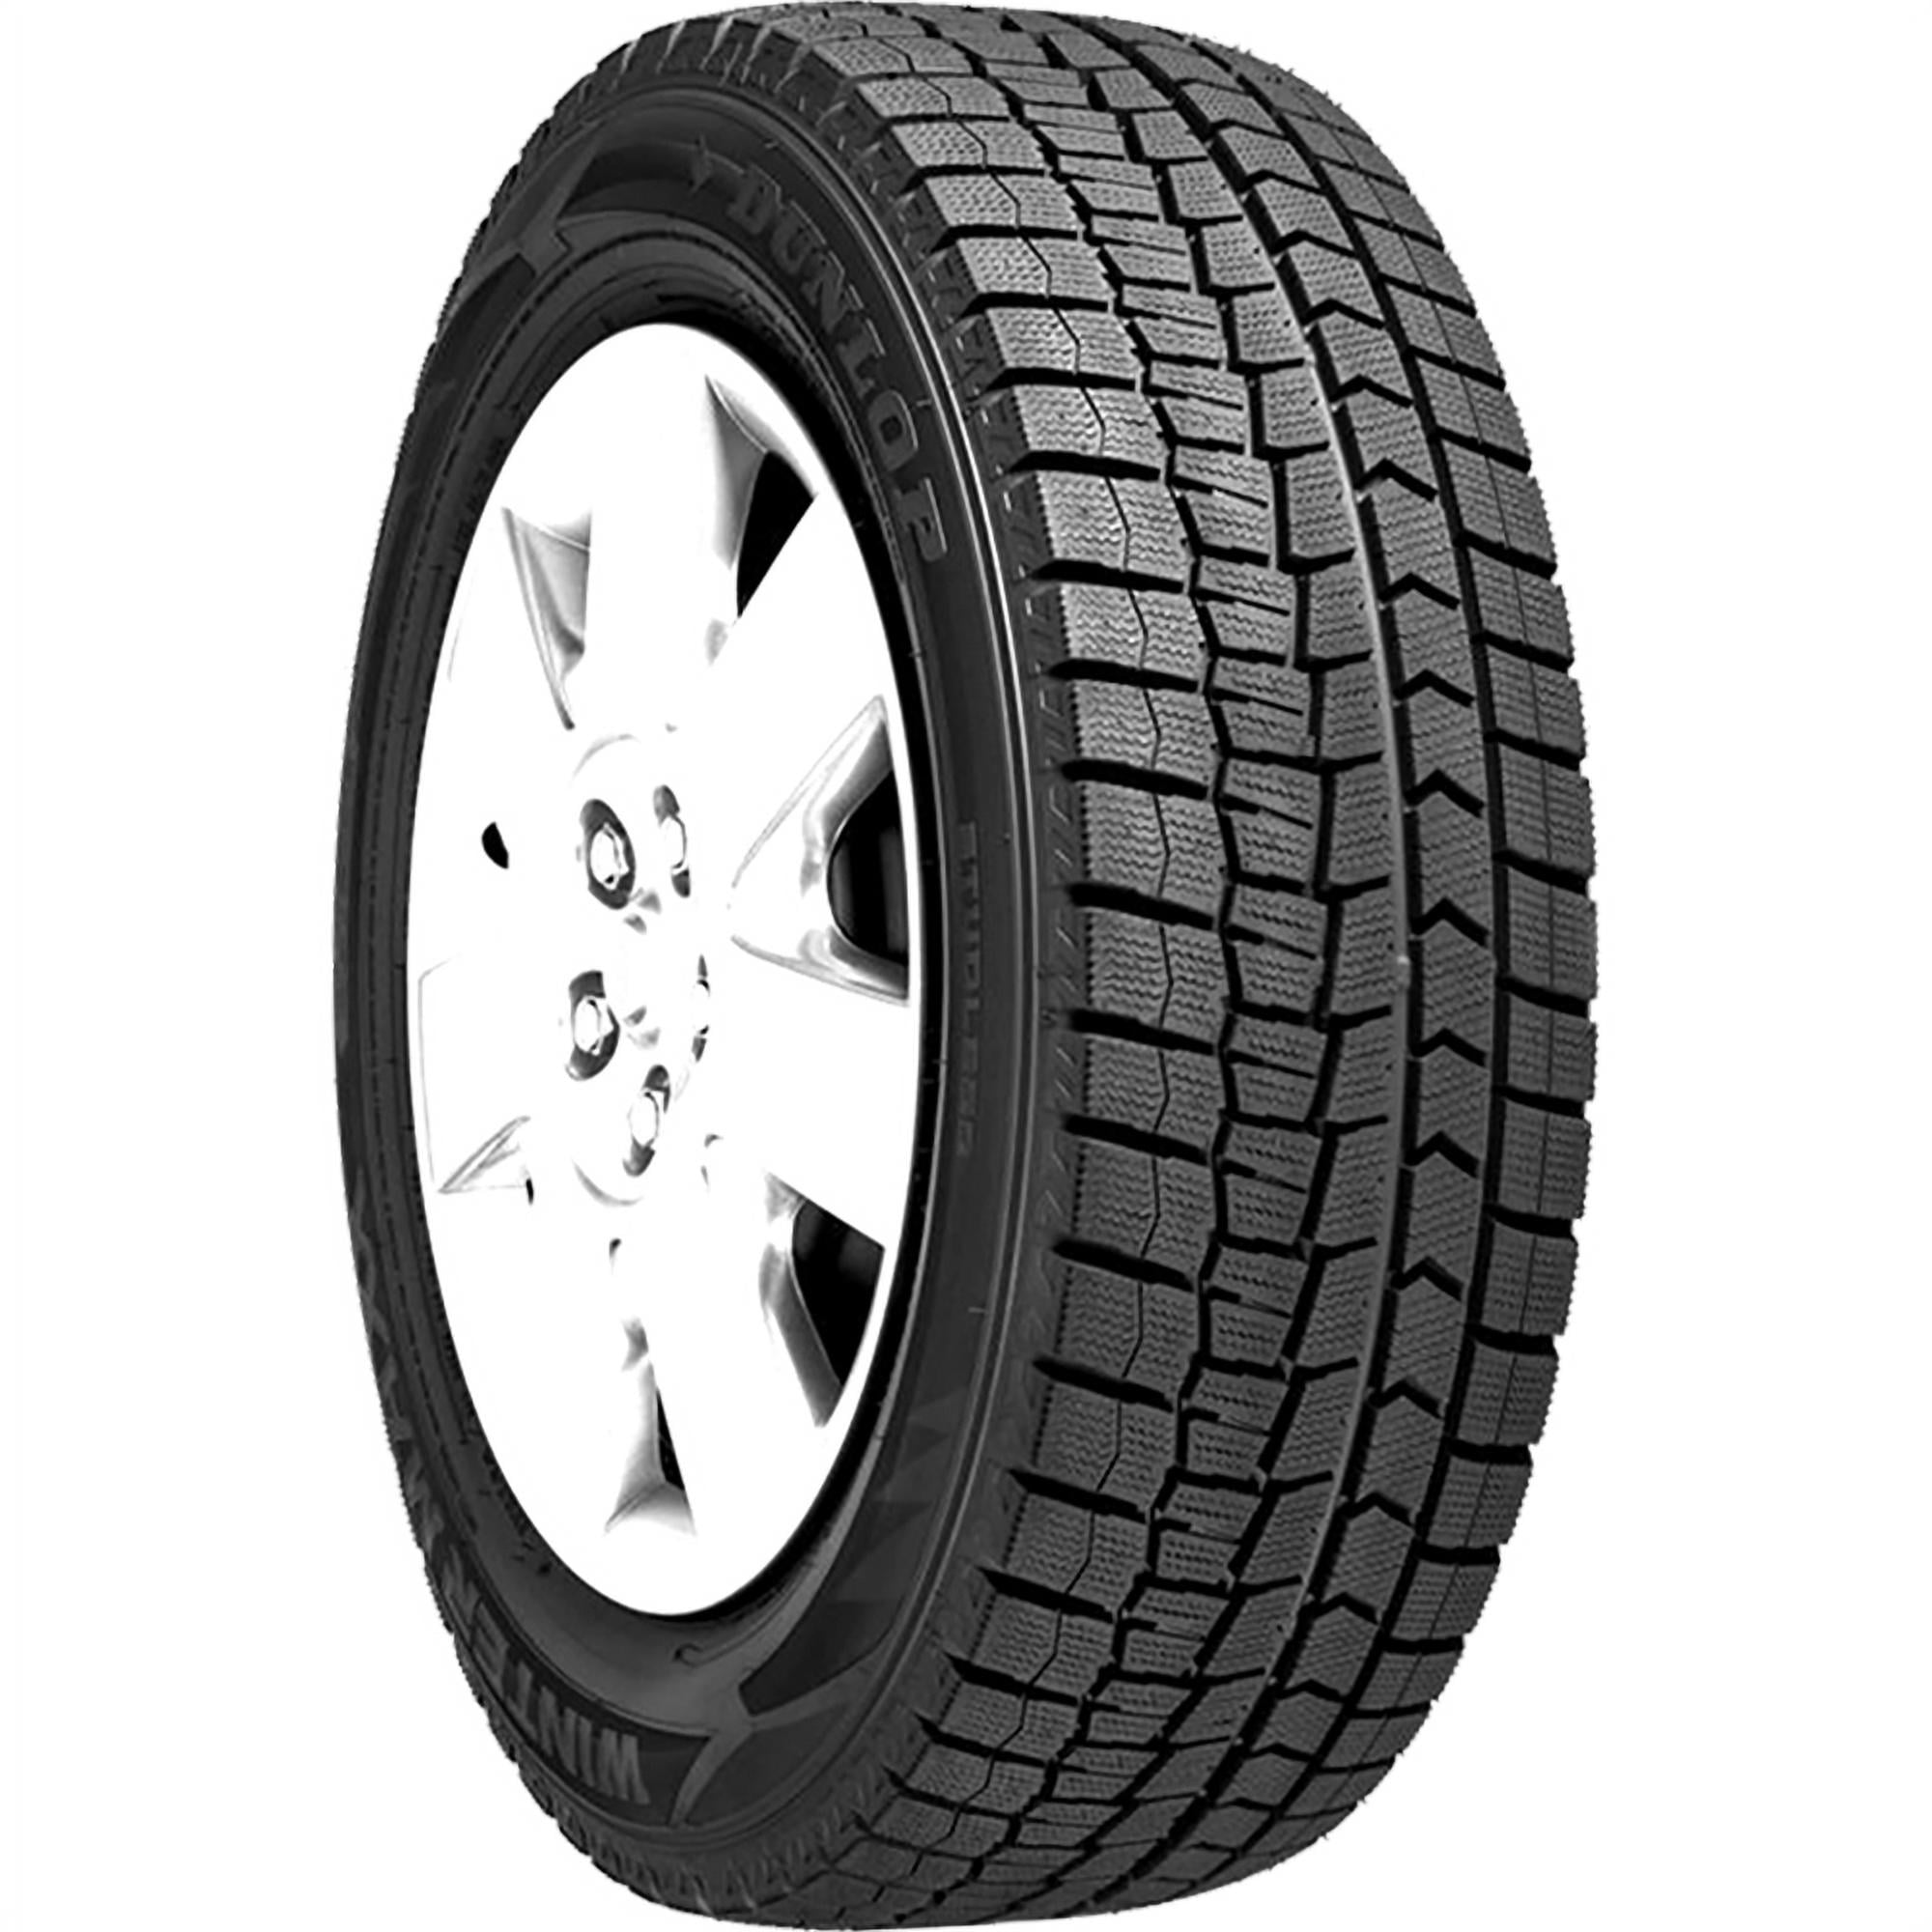 Dunlop Winter Maxx 2 185/60R15 84T Winter Tire